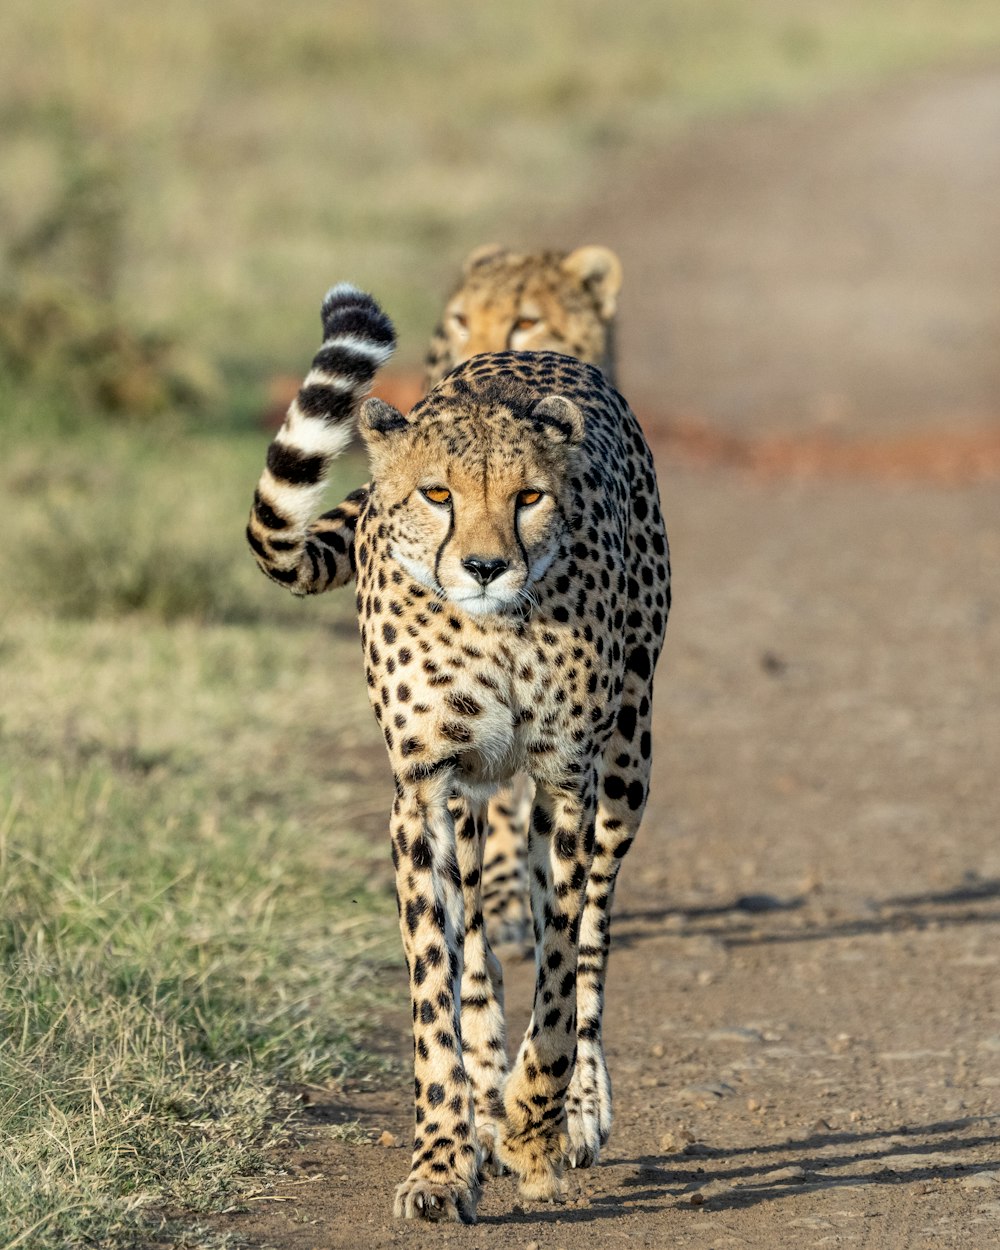 a cheetah walking down a dirt road towards the camera